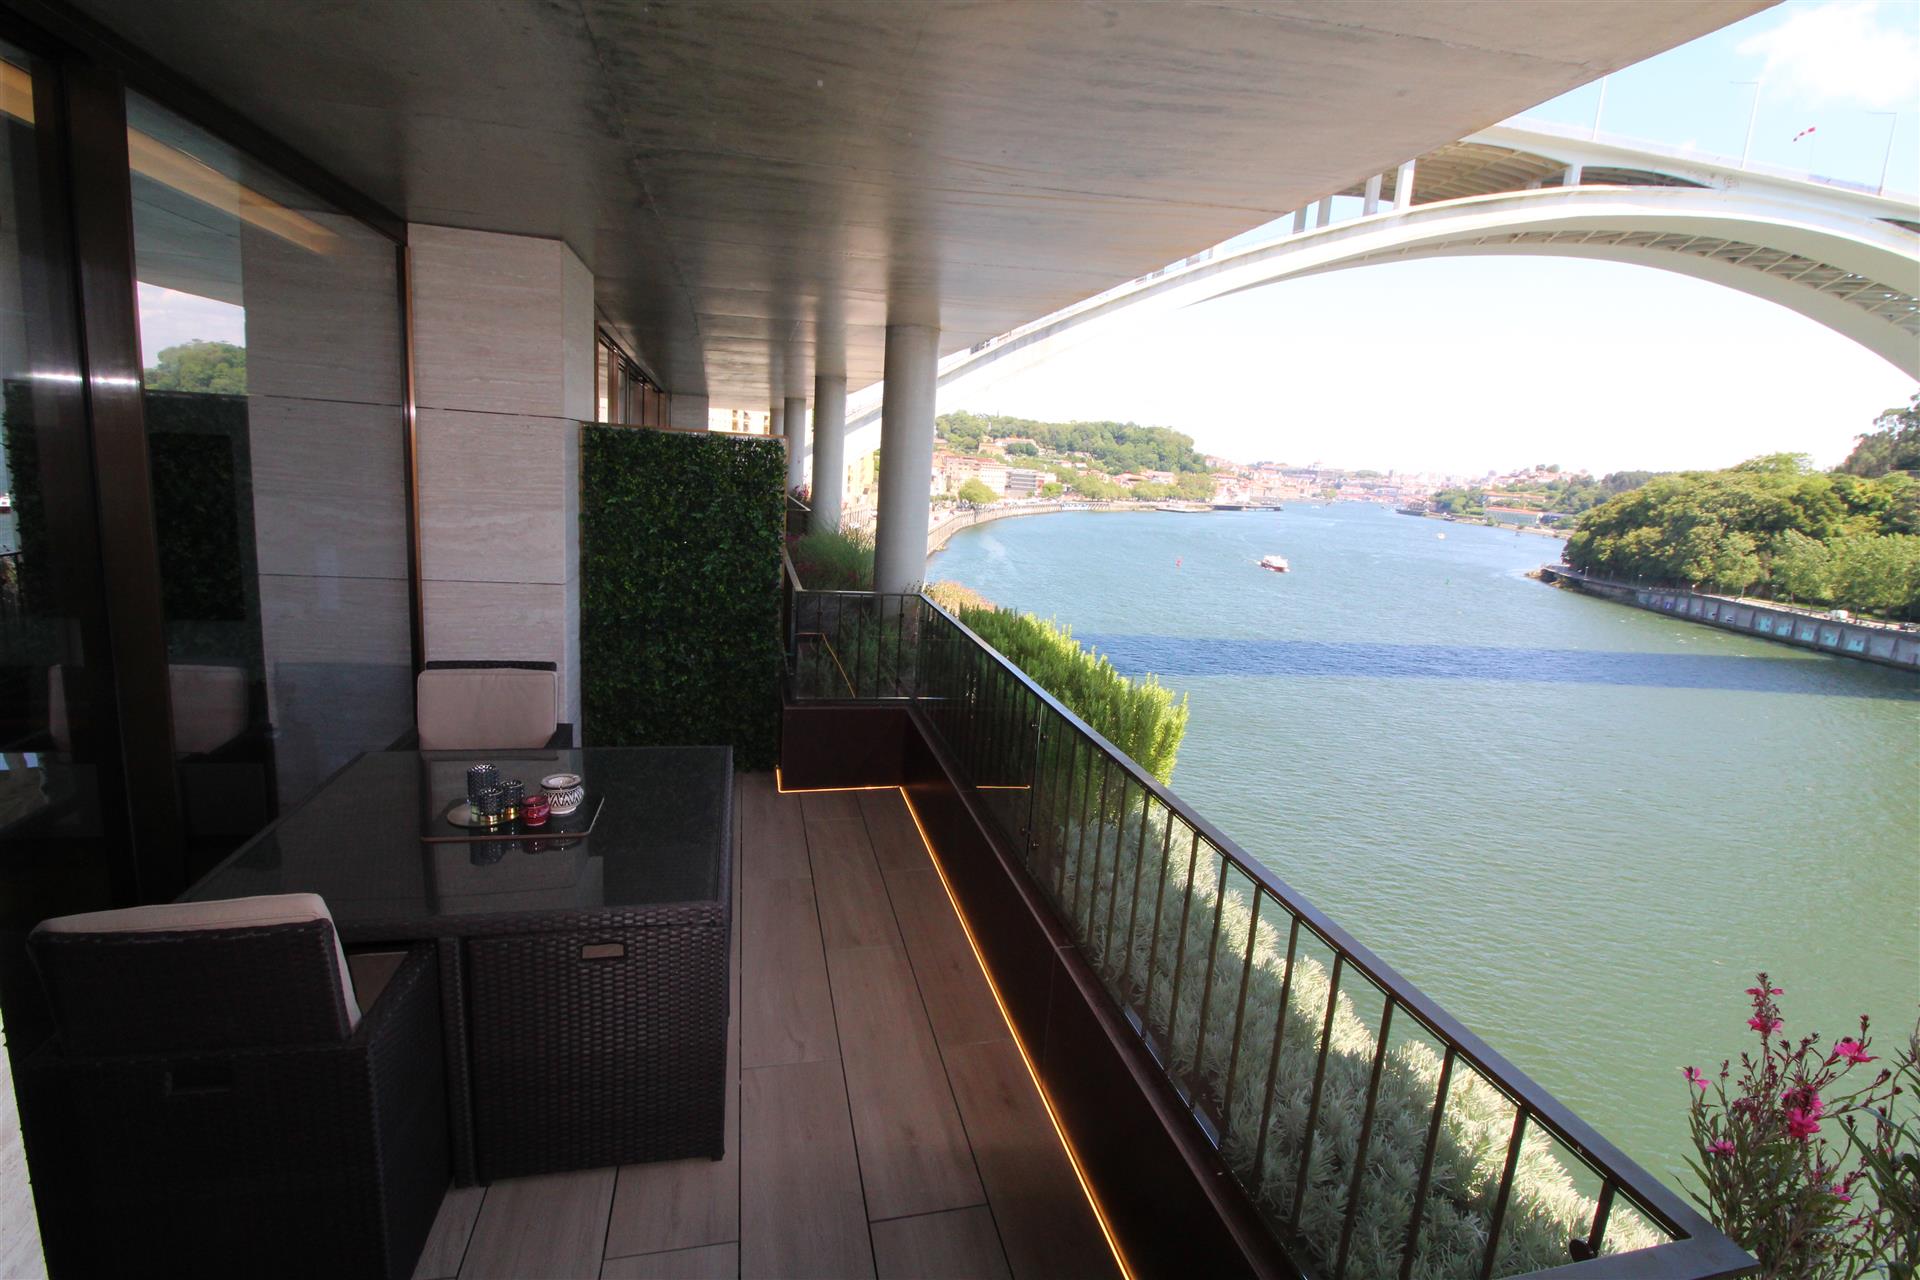 Lyxig lägenhet med utsikt över Dourofloden